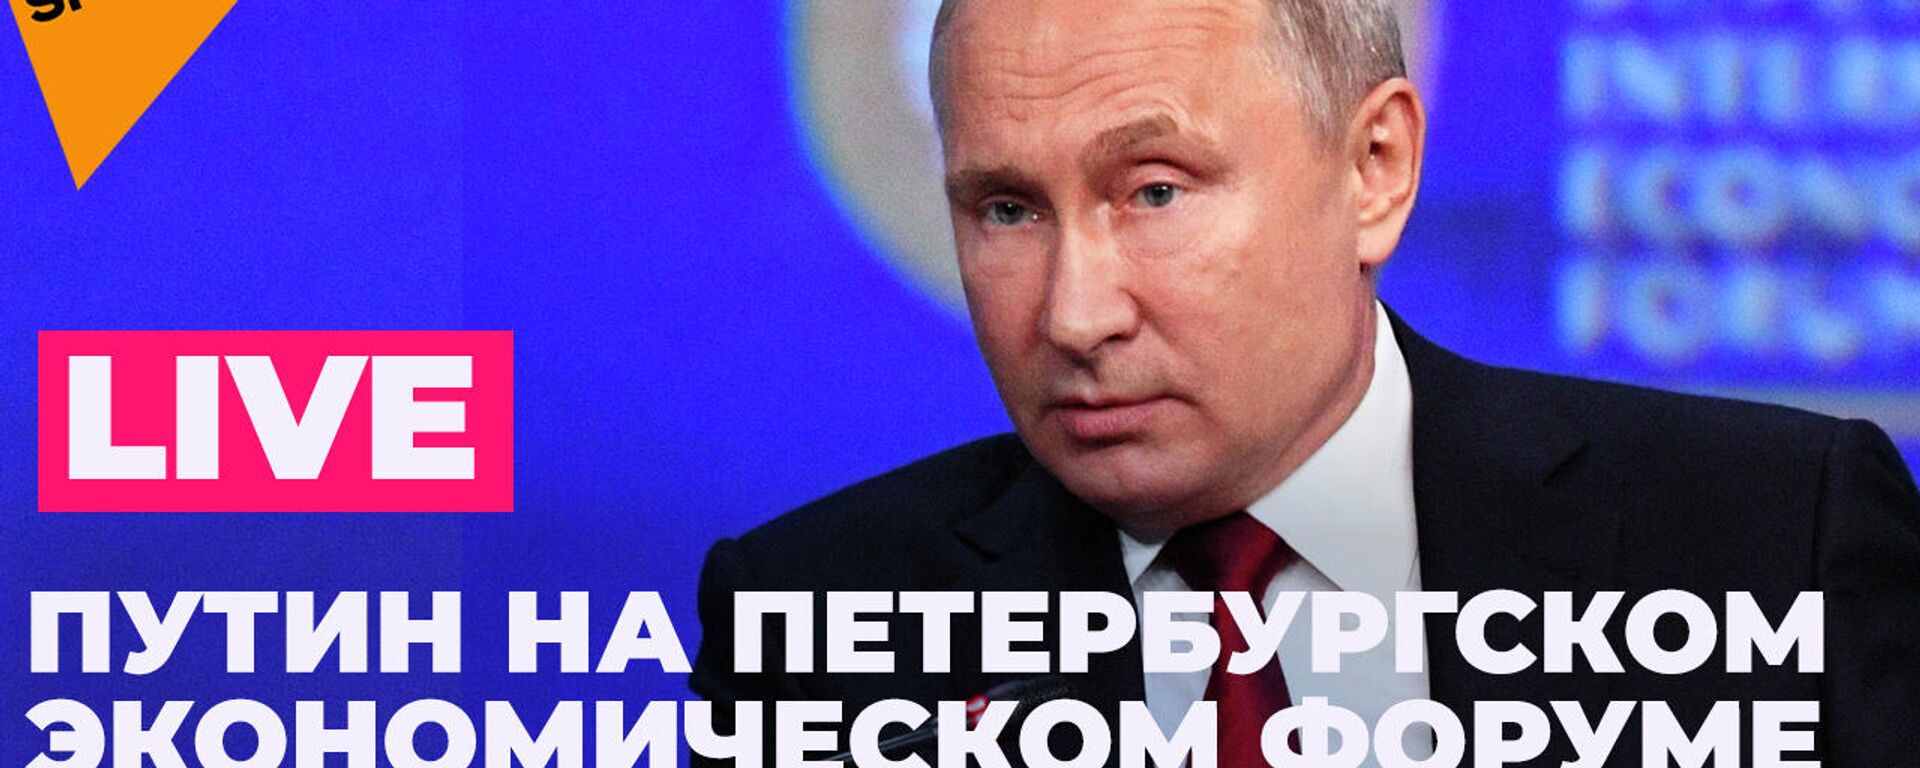 Владимир Путин выступает на ПМЭФ: LIVE - Sputnik Узбекистан, 1920, 04.06.2021